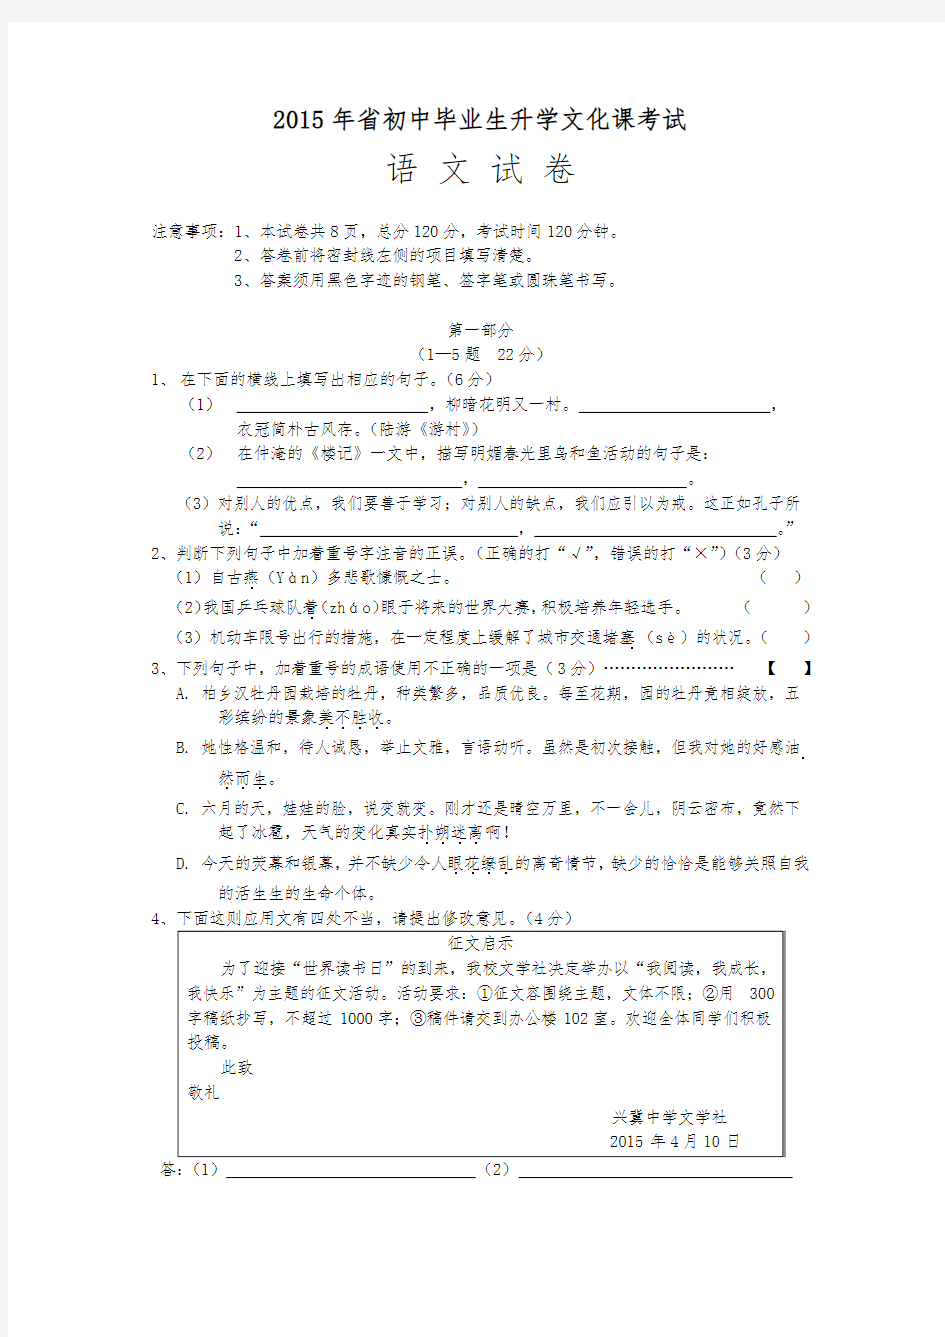 2015年河北省初中毕业生升学文化课考试语文试卷和答案(文字版)